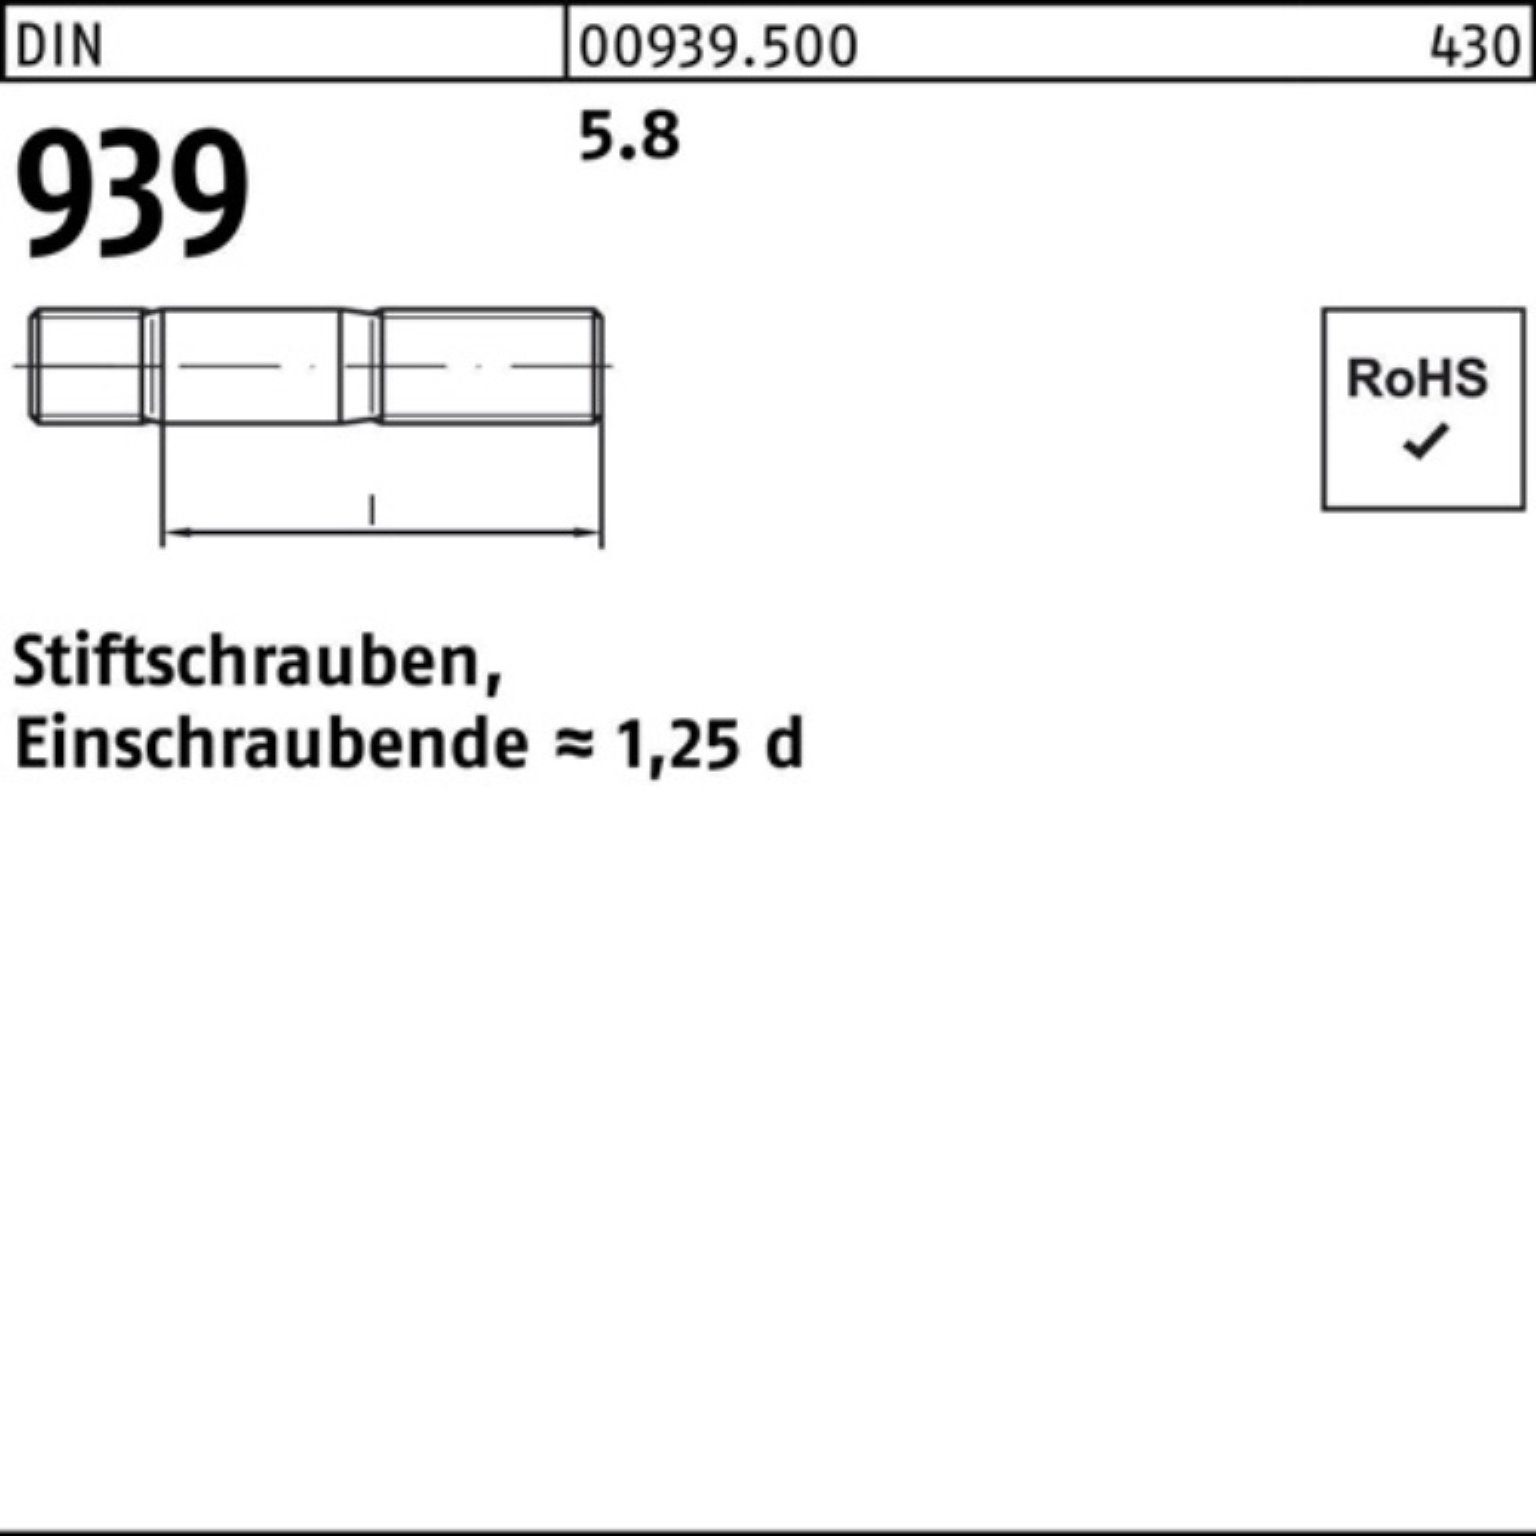 939 S DIN Stiftschraube M6x 45 100er 5.8 Stiftschraube Einschraubende=1,25d Reyher 100 Pack